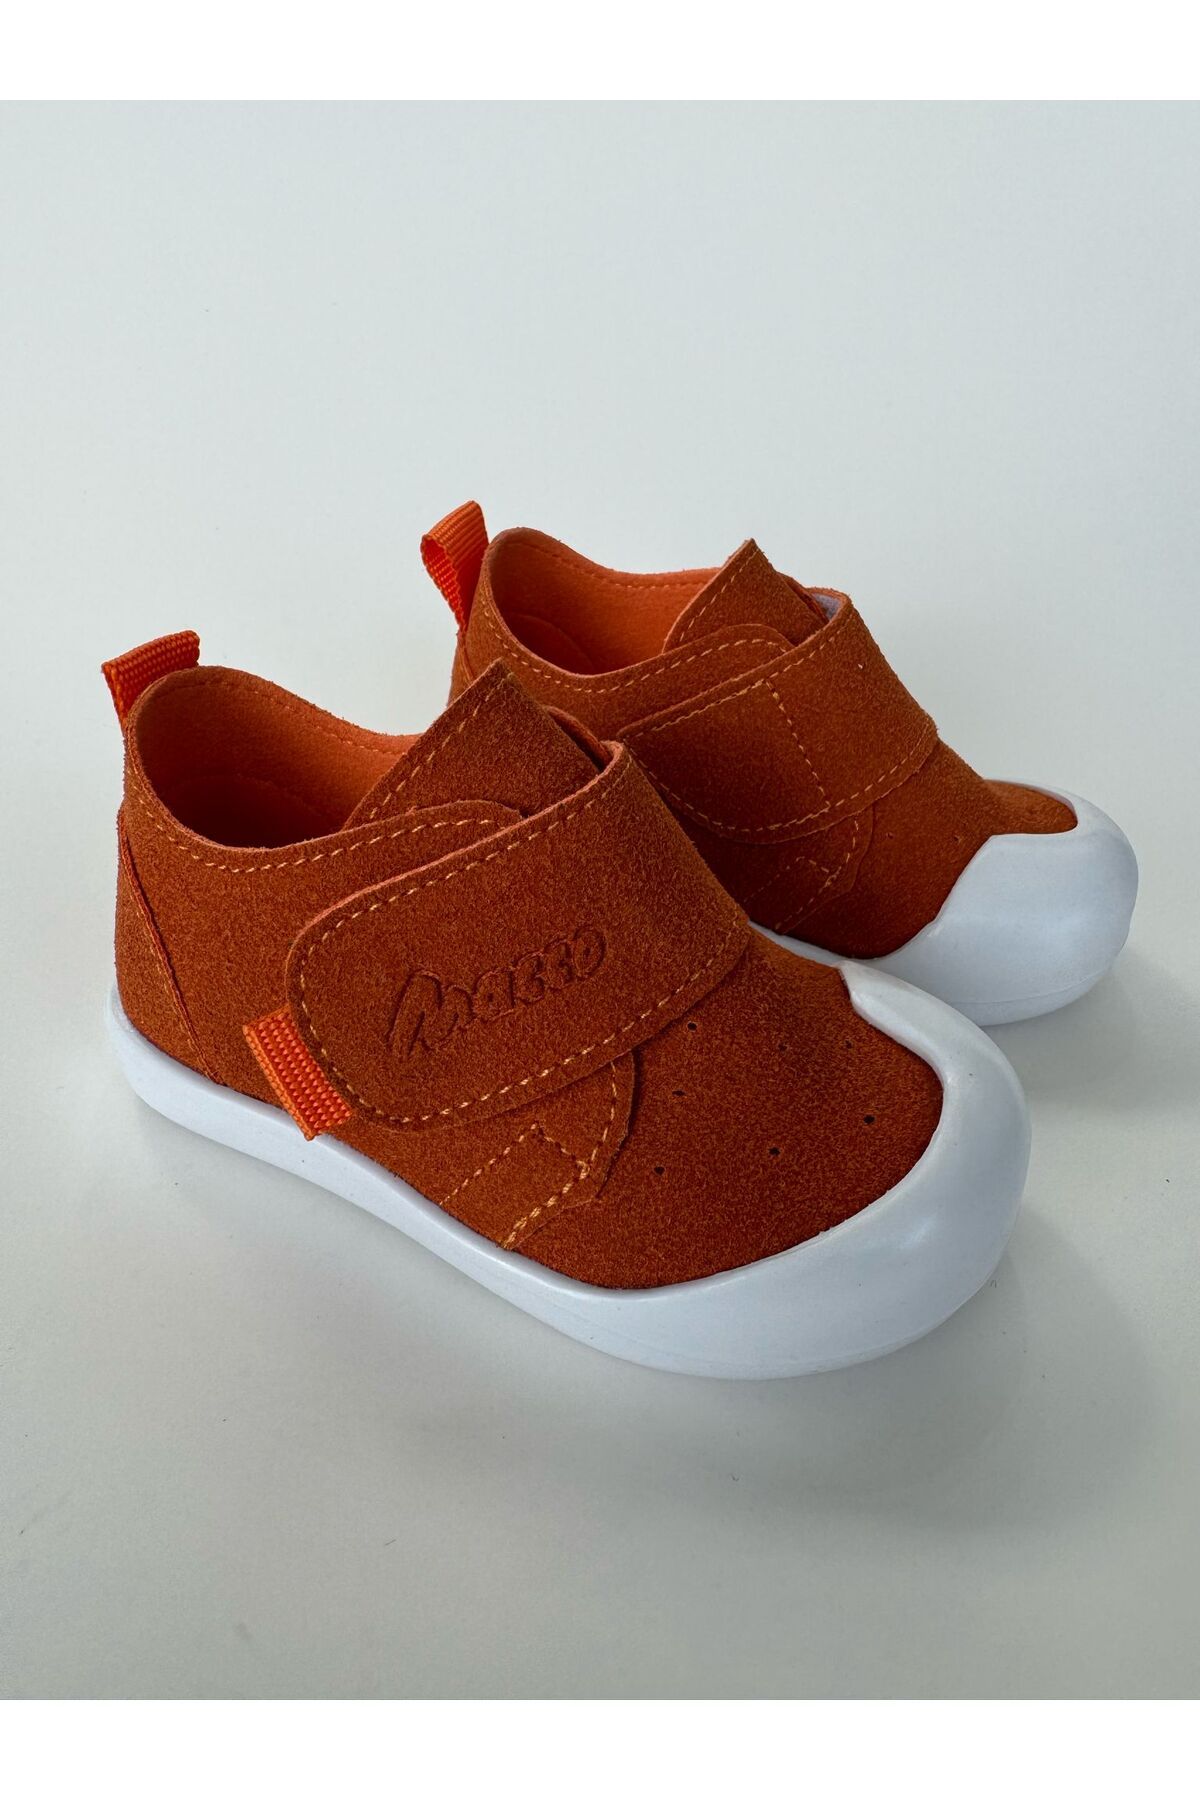 macco shoes İlk Adım Ortopedik Kız Bebek Ayakkabı Erkek Bebek Ayakkabı